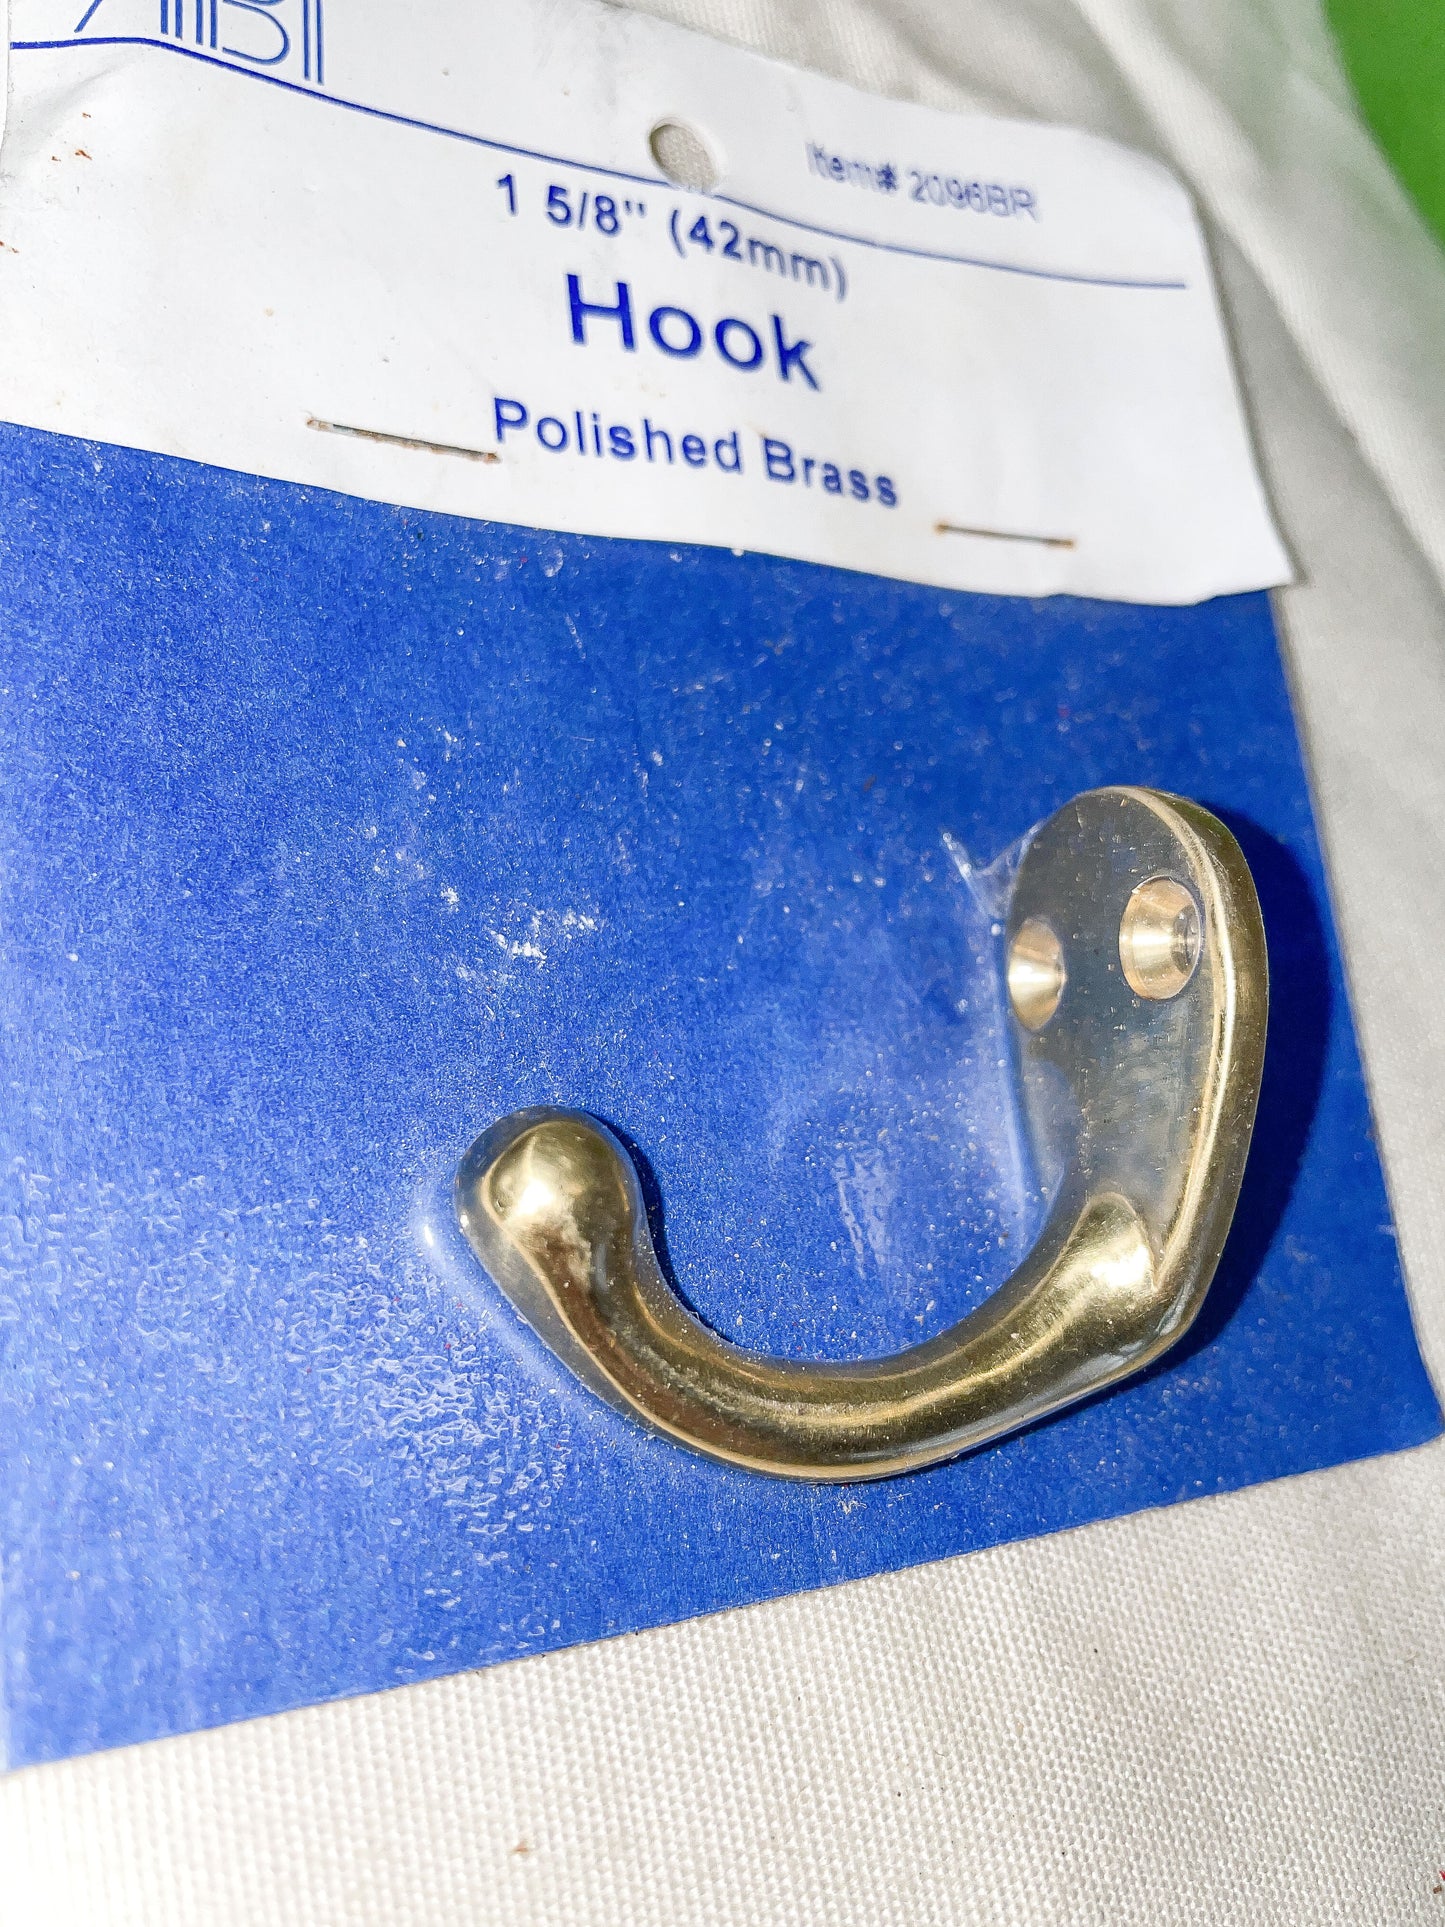 Polished Brass Hook